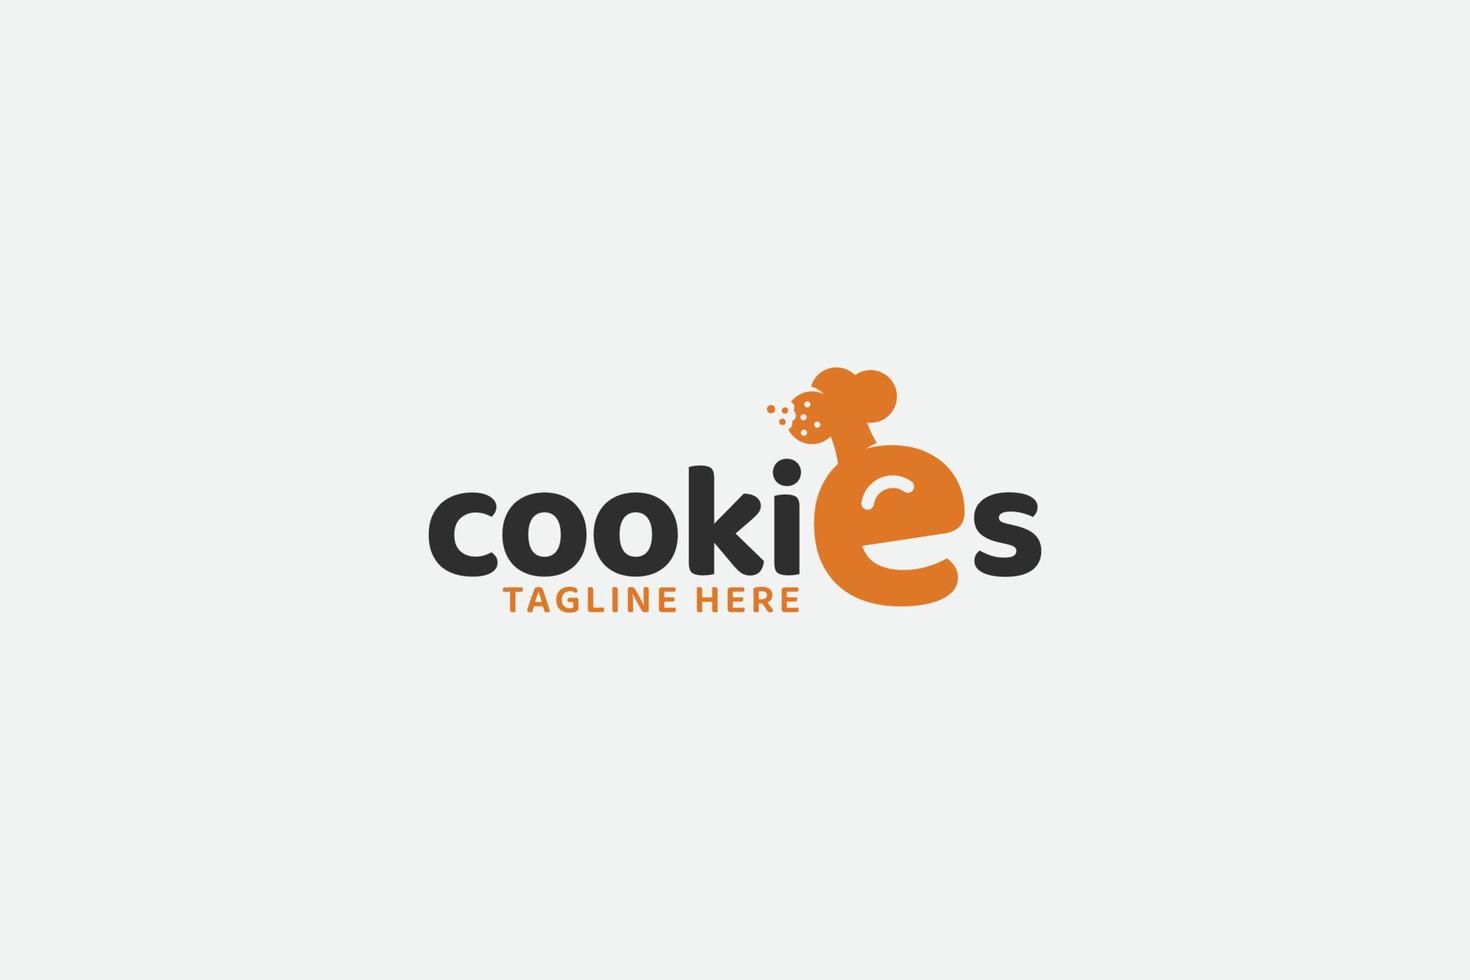 grappig koekjeslogo met een combinatie van chef-kok en koekjes als letter e voor elk bedrijf, vooral voor koekjeswinkel, bakkerij, cakery, enz. vector